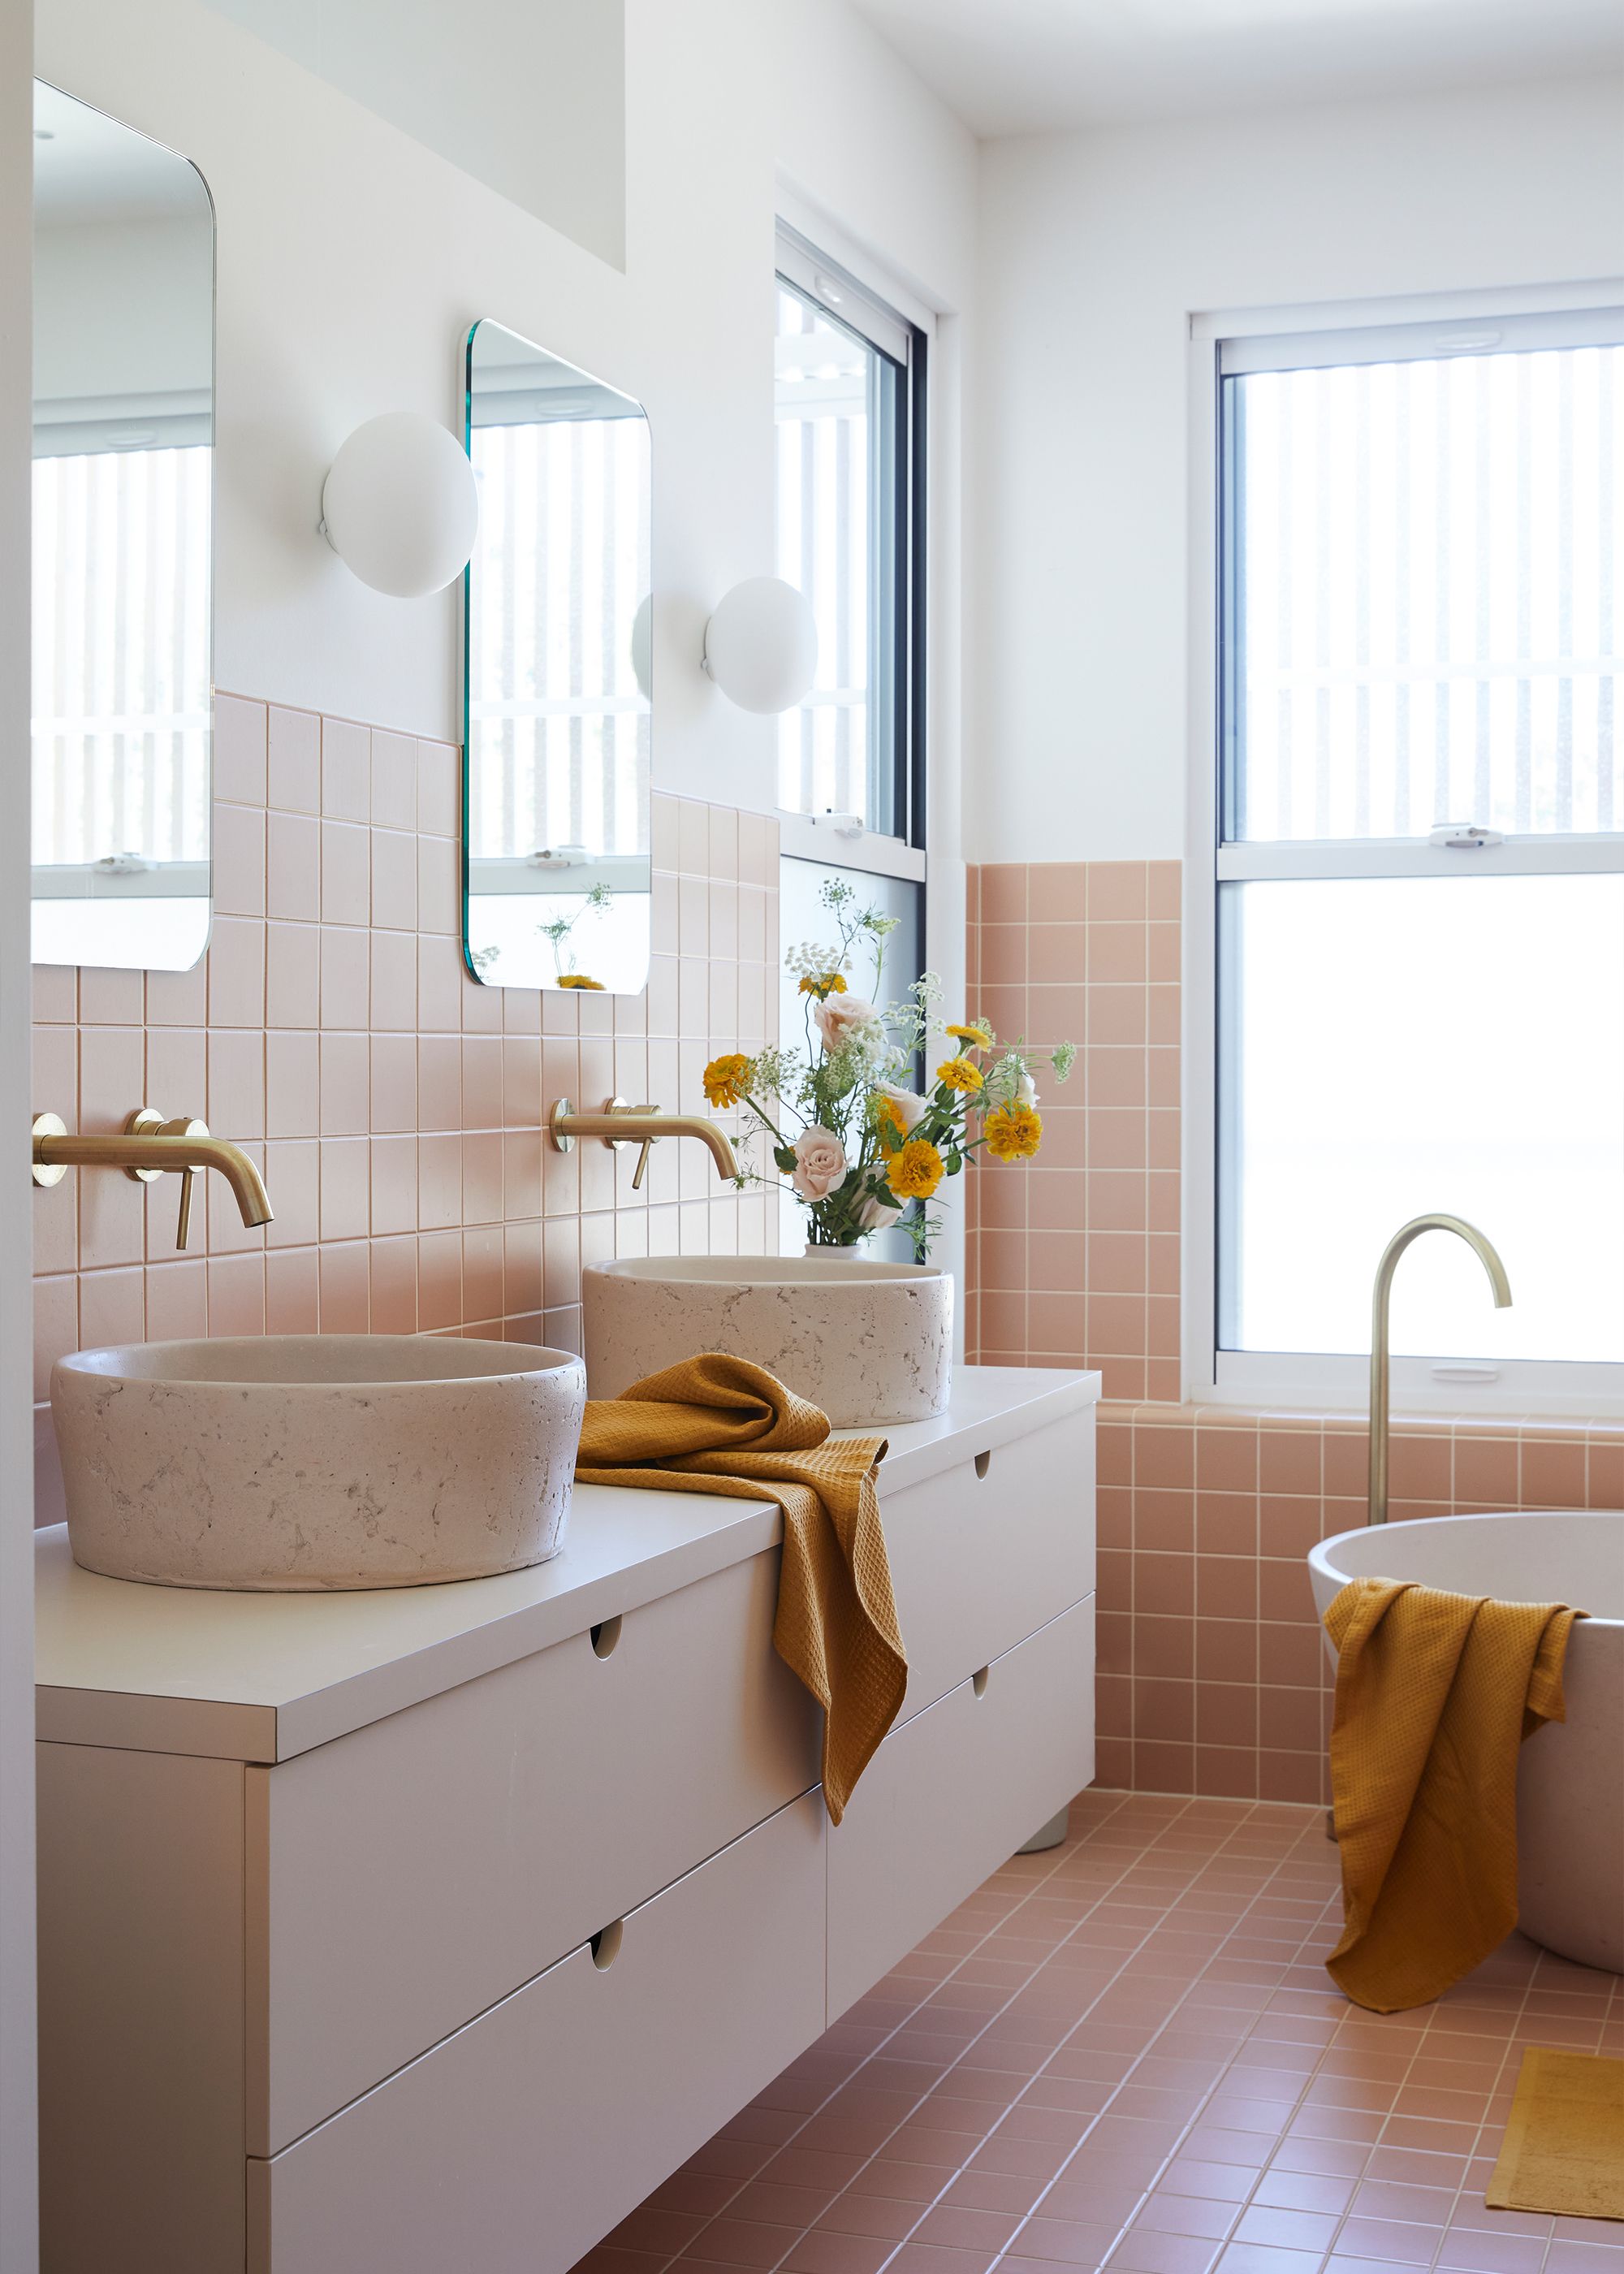 10 Stylish Bathroom Vanity Ideas